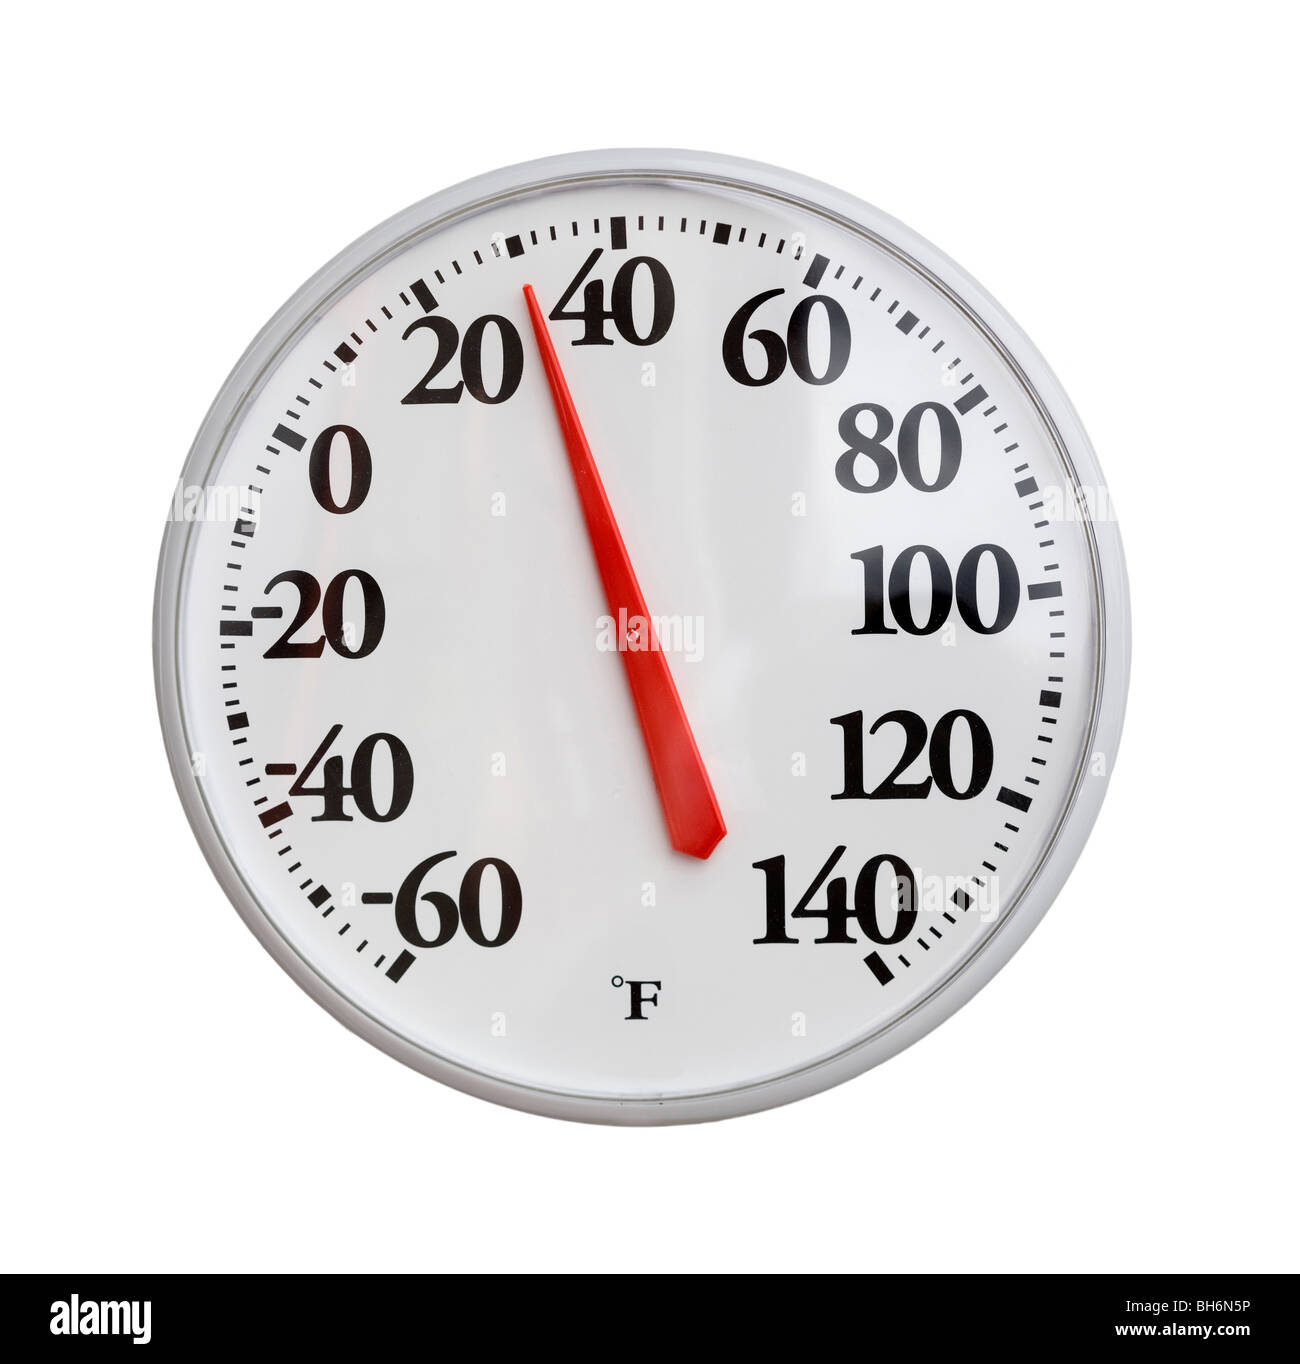 Round thermometer shows 30 degrees Fahrenheit, Stock Photo